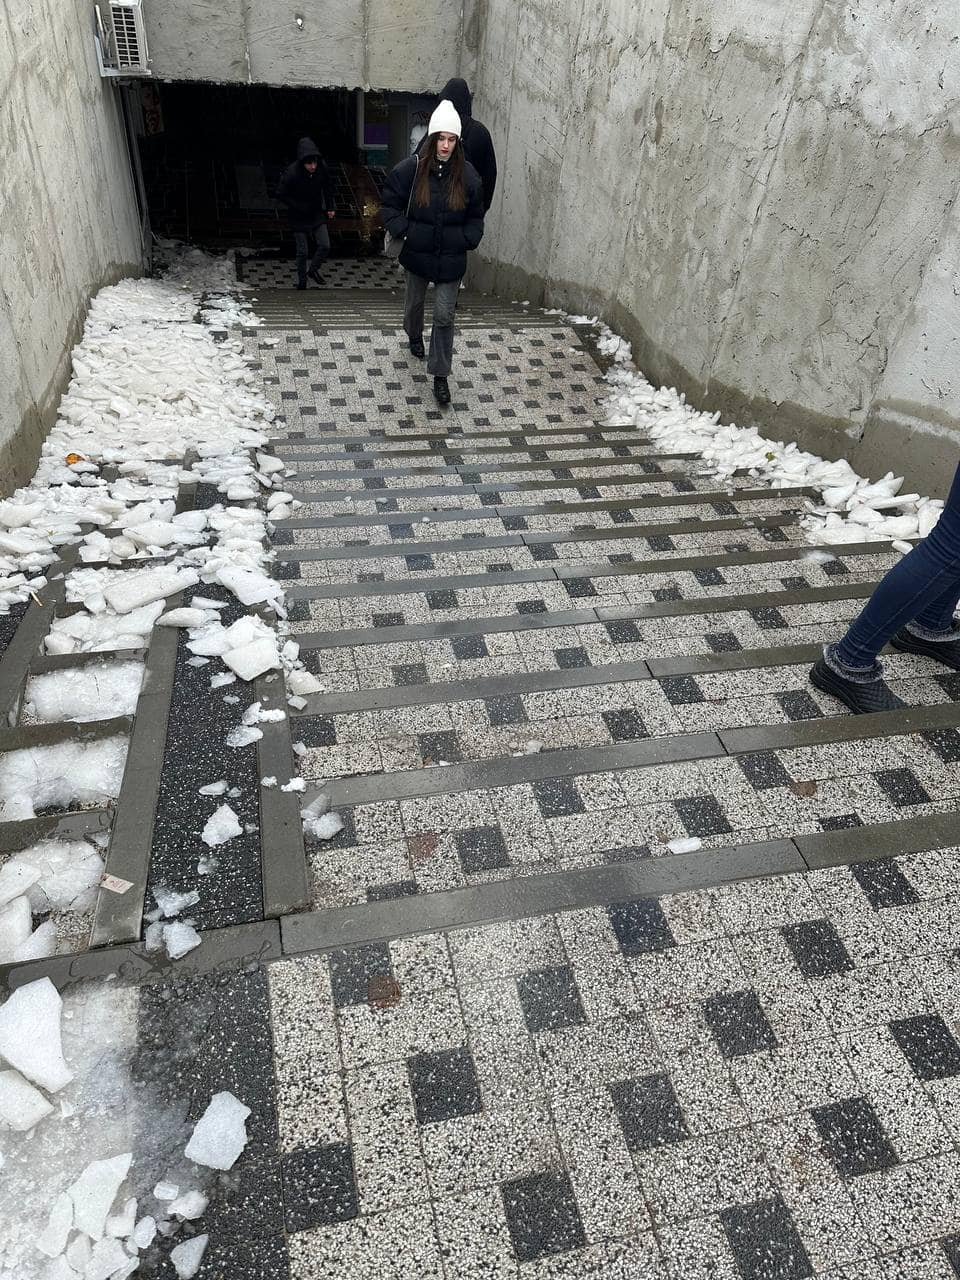 Imagini virale cu oameni care încearcă să coboare pe scări cu gheață, în capitală. Primăria Chișinău reacționează: „V-ați învățat să criticați doar”